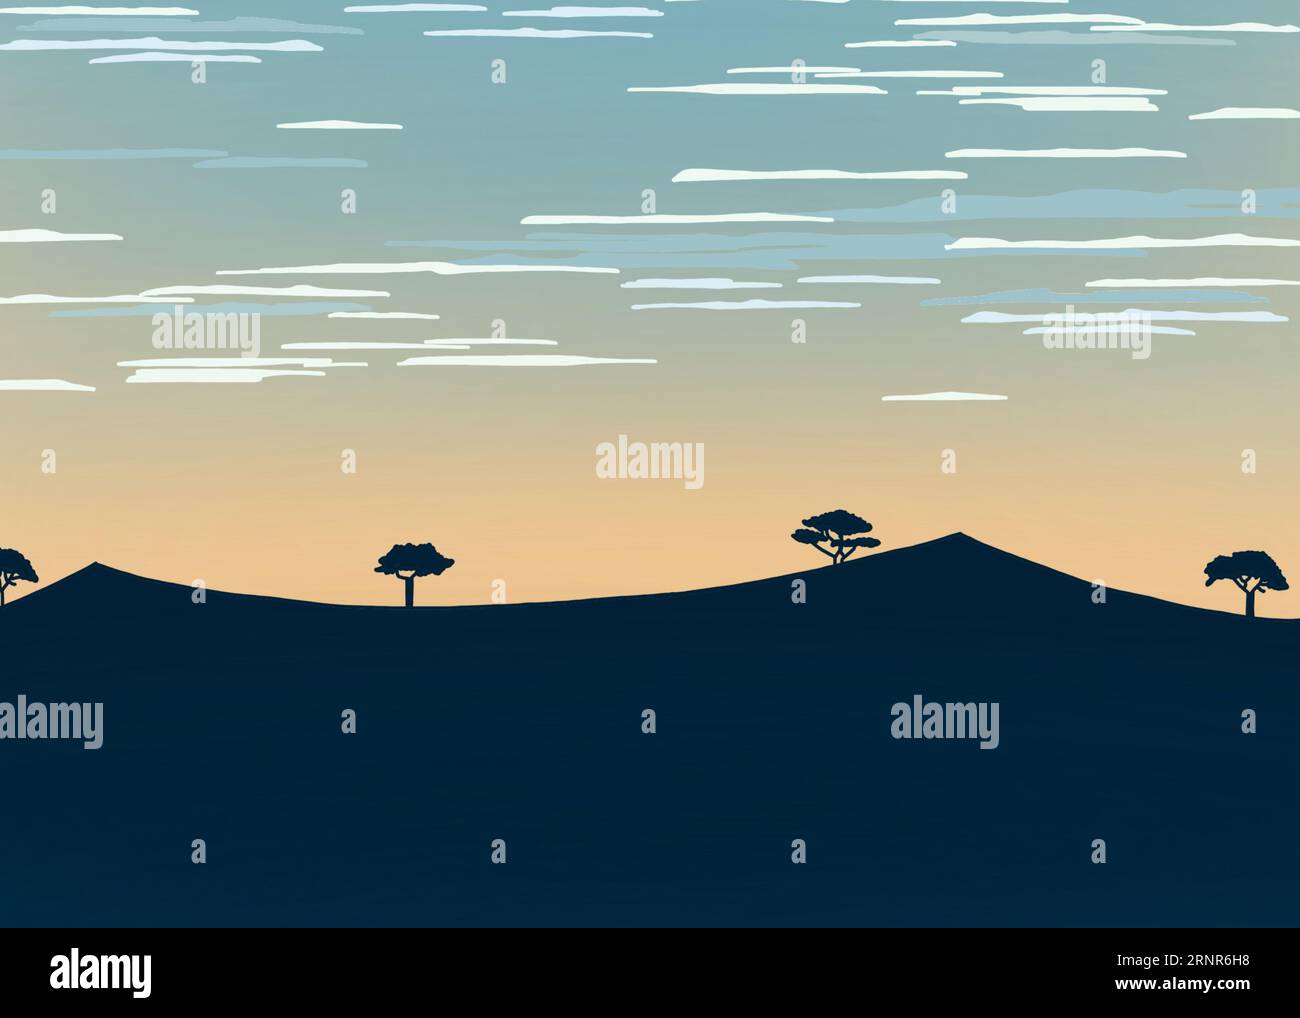 Cartone animato leggermente astratto che disegna alberi lontani in un orientamento in formato paesaggio collinare. Foto Stock